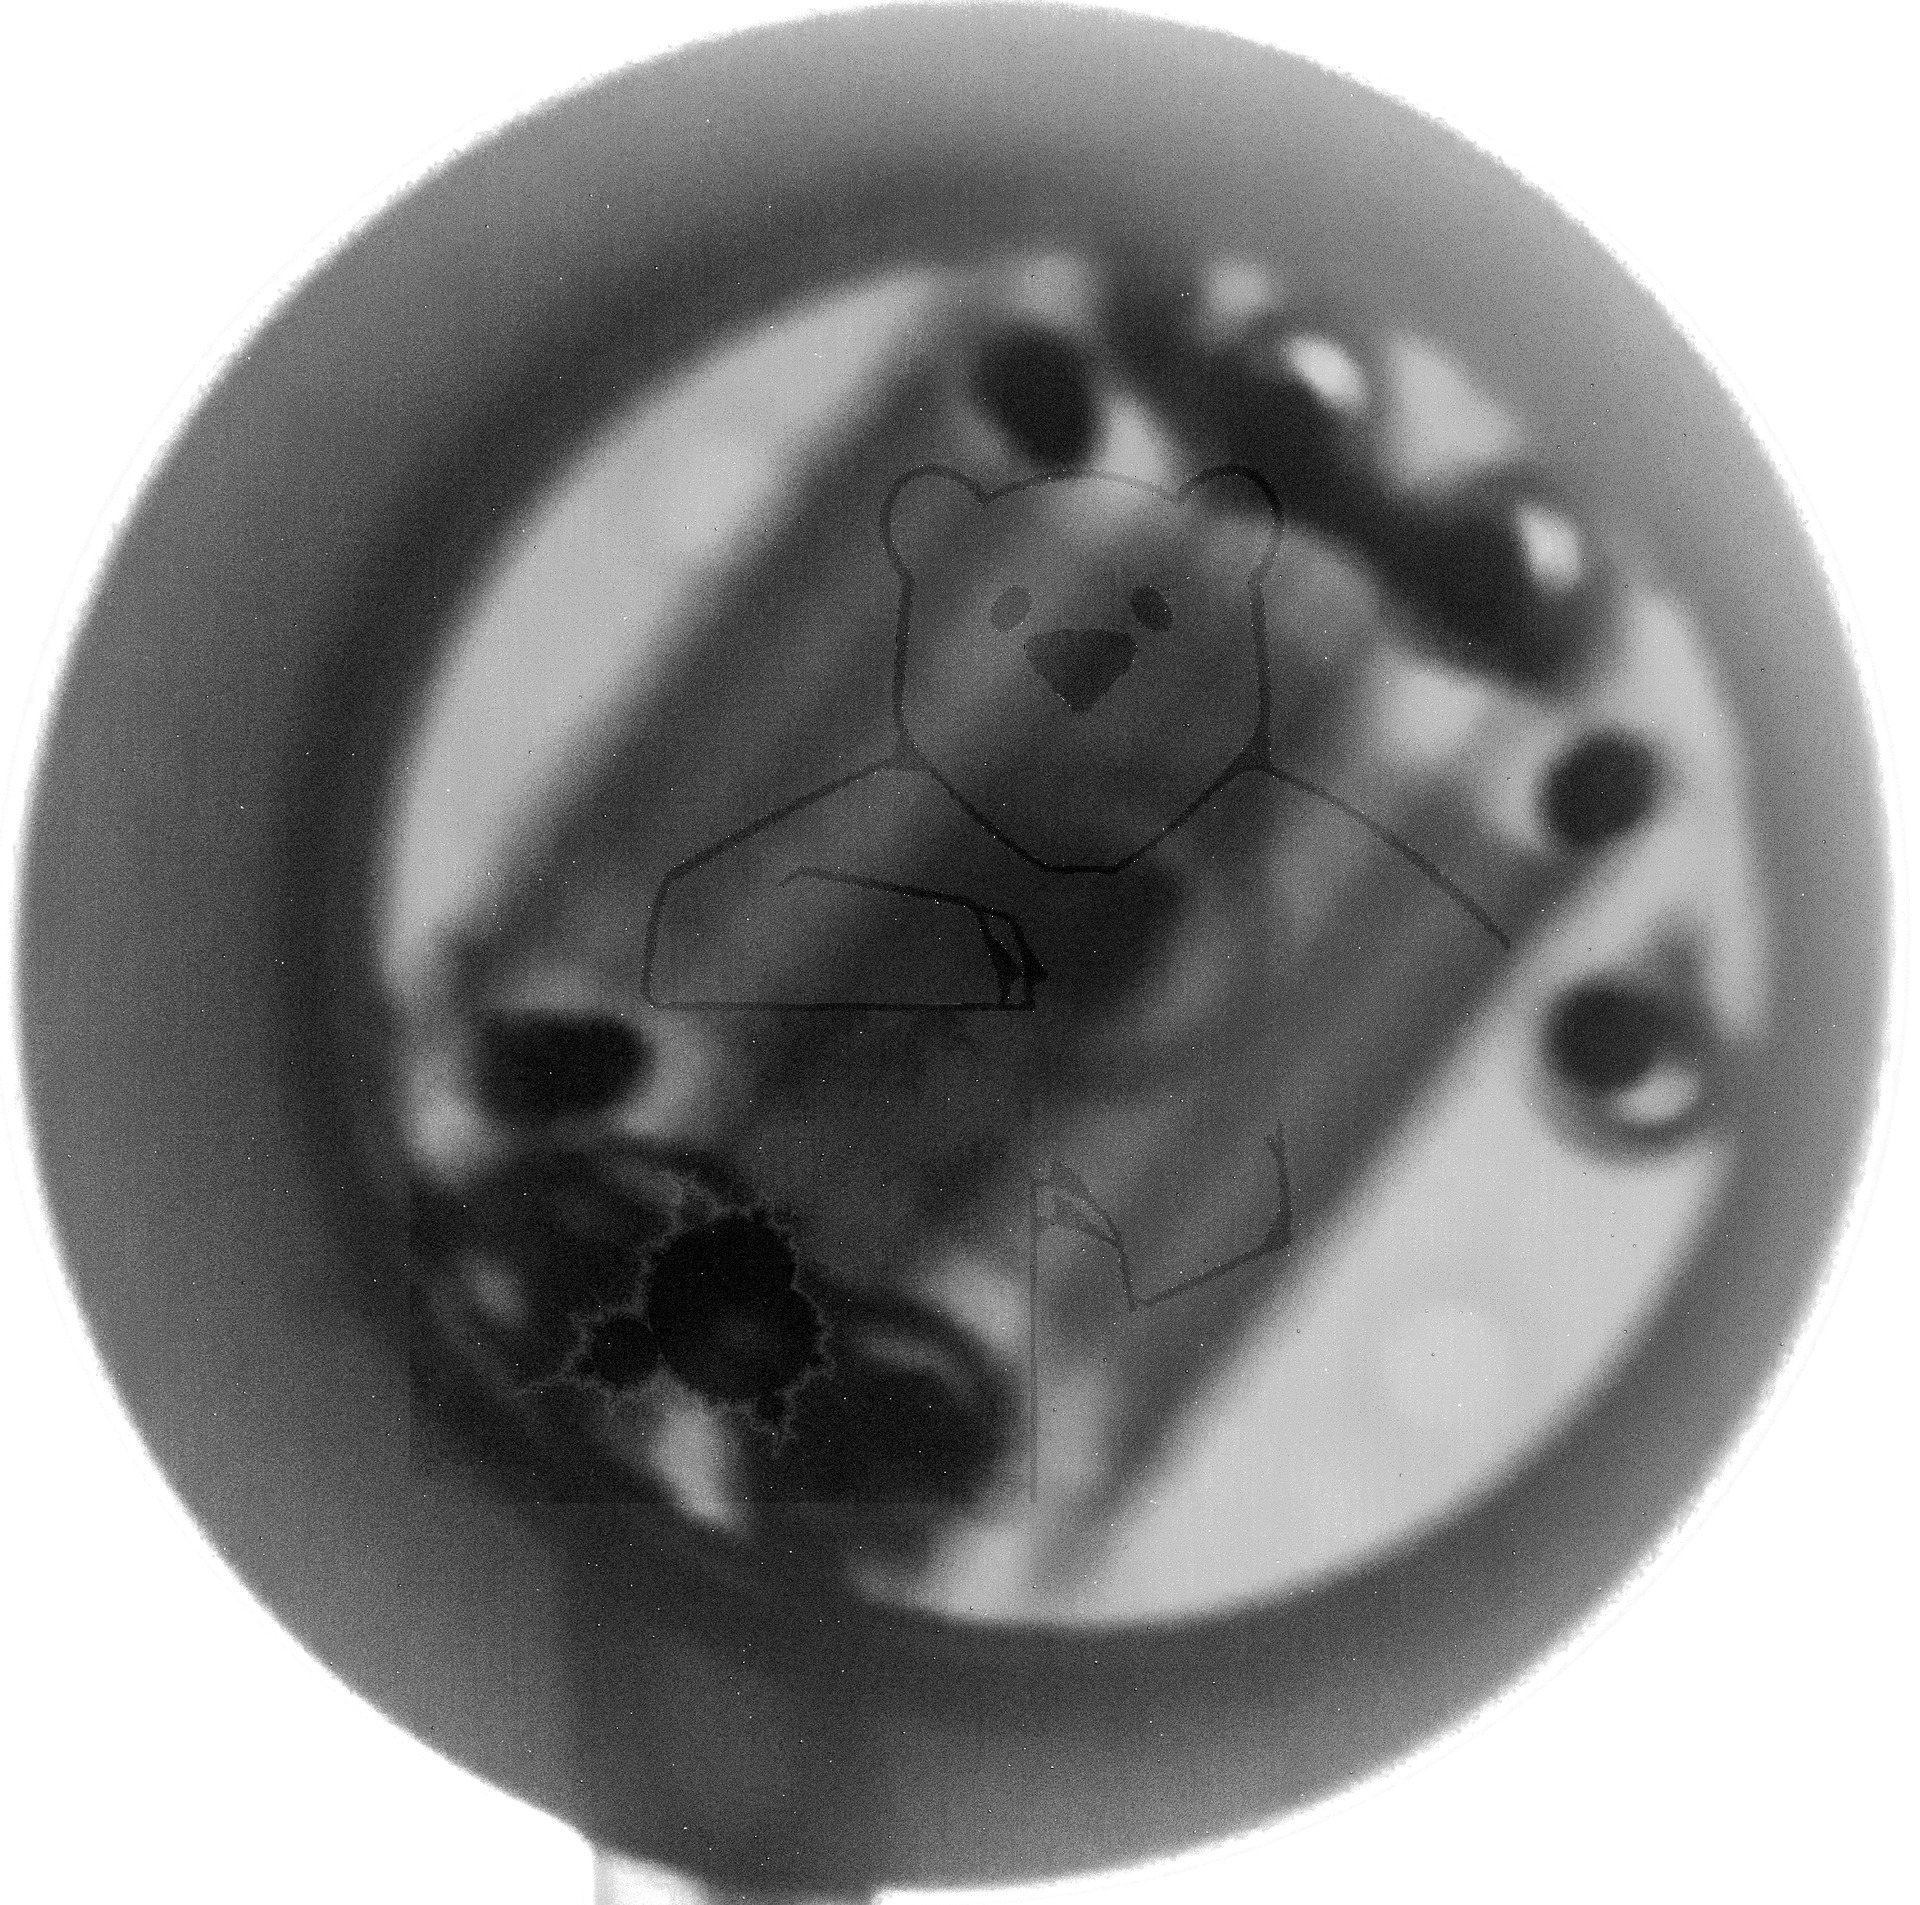 Röhre KT211 (Stahlröhrensockel, 8pol) #8401 Bild 5 - Röntgenbild